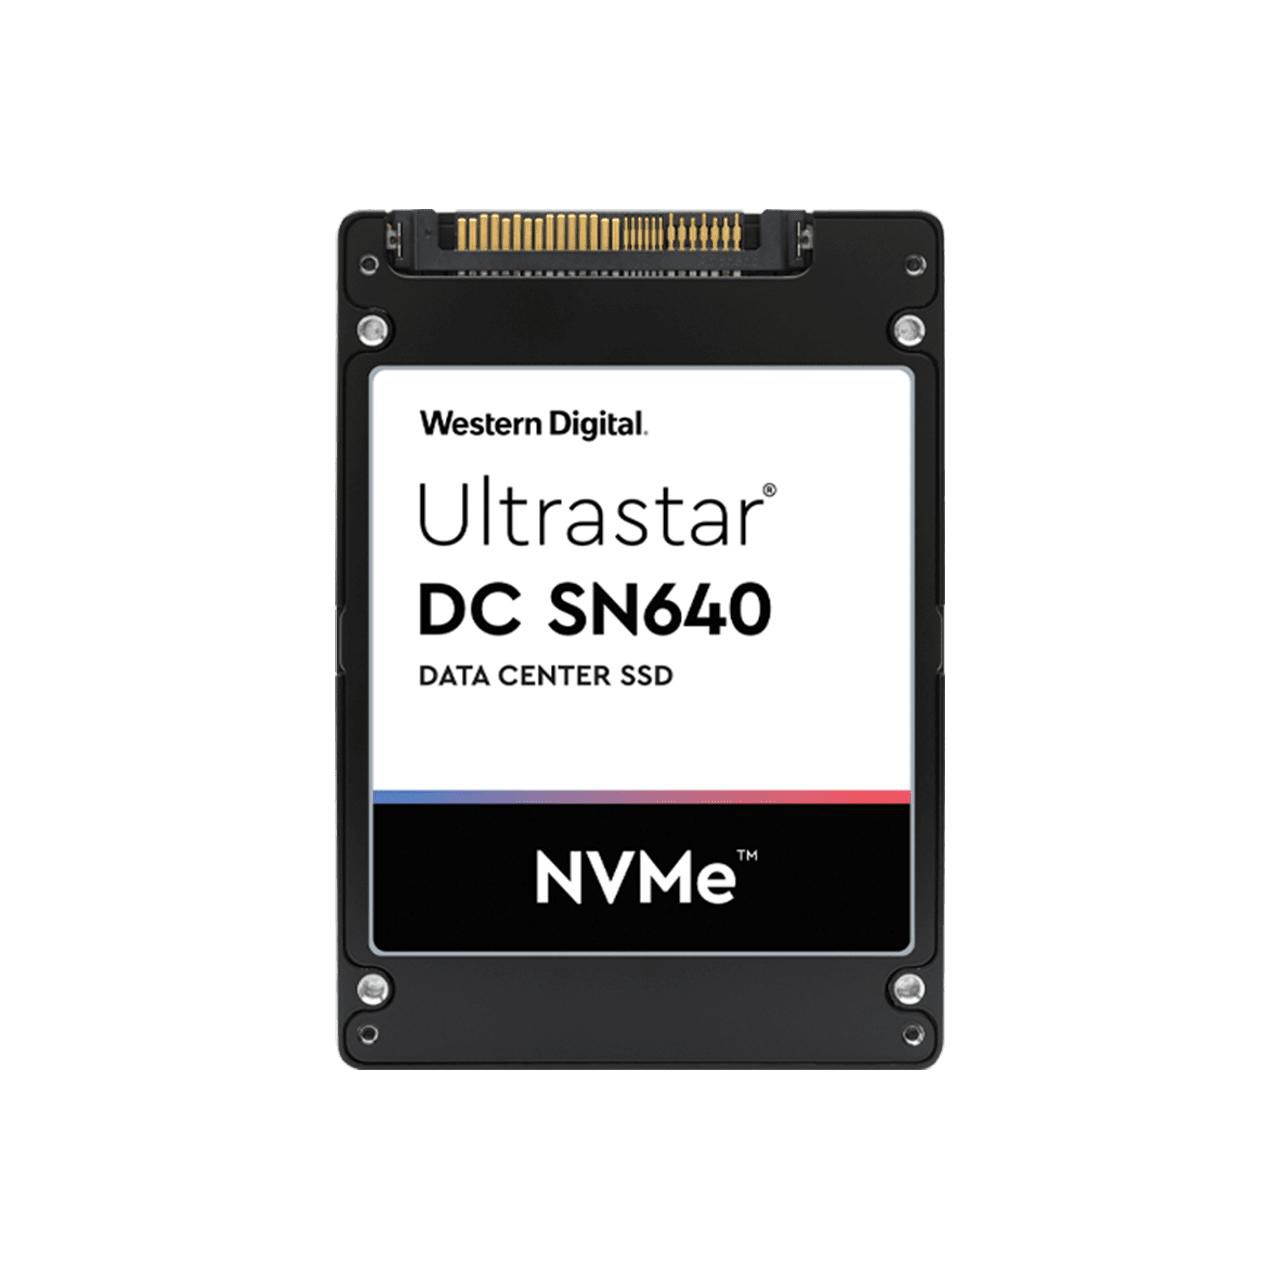 WESTERN DIGITAL Ultrastar DC SN640 960GB